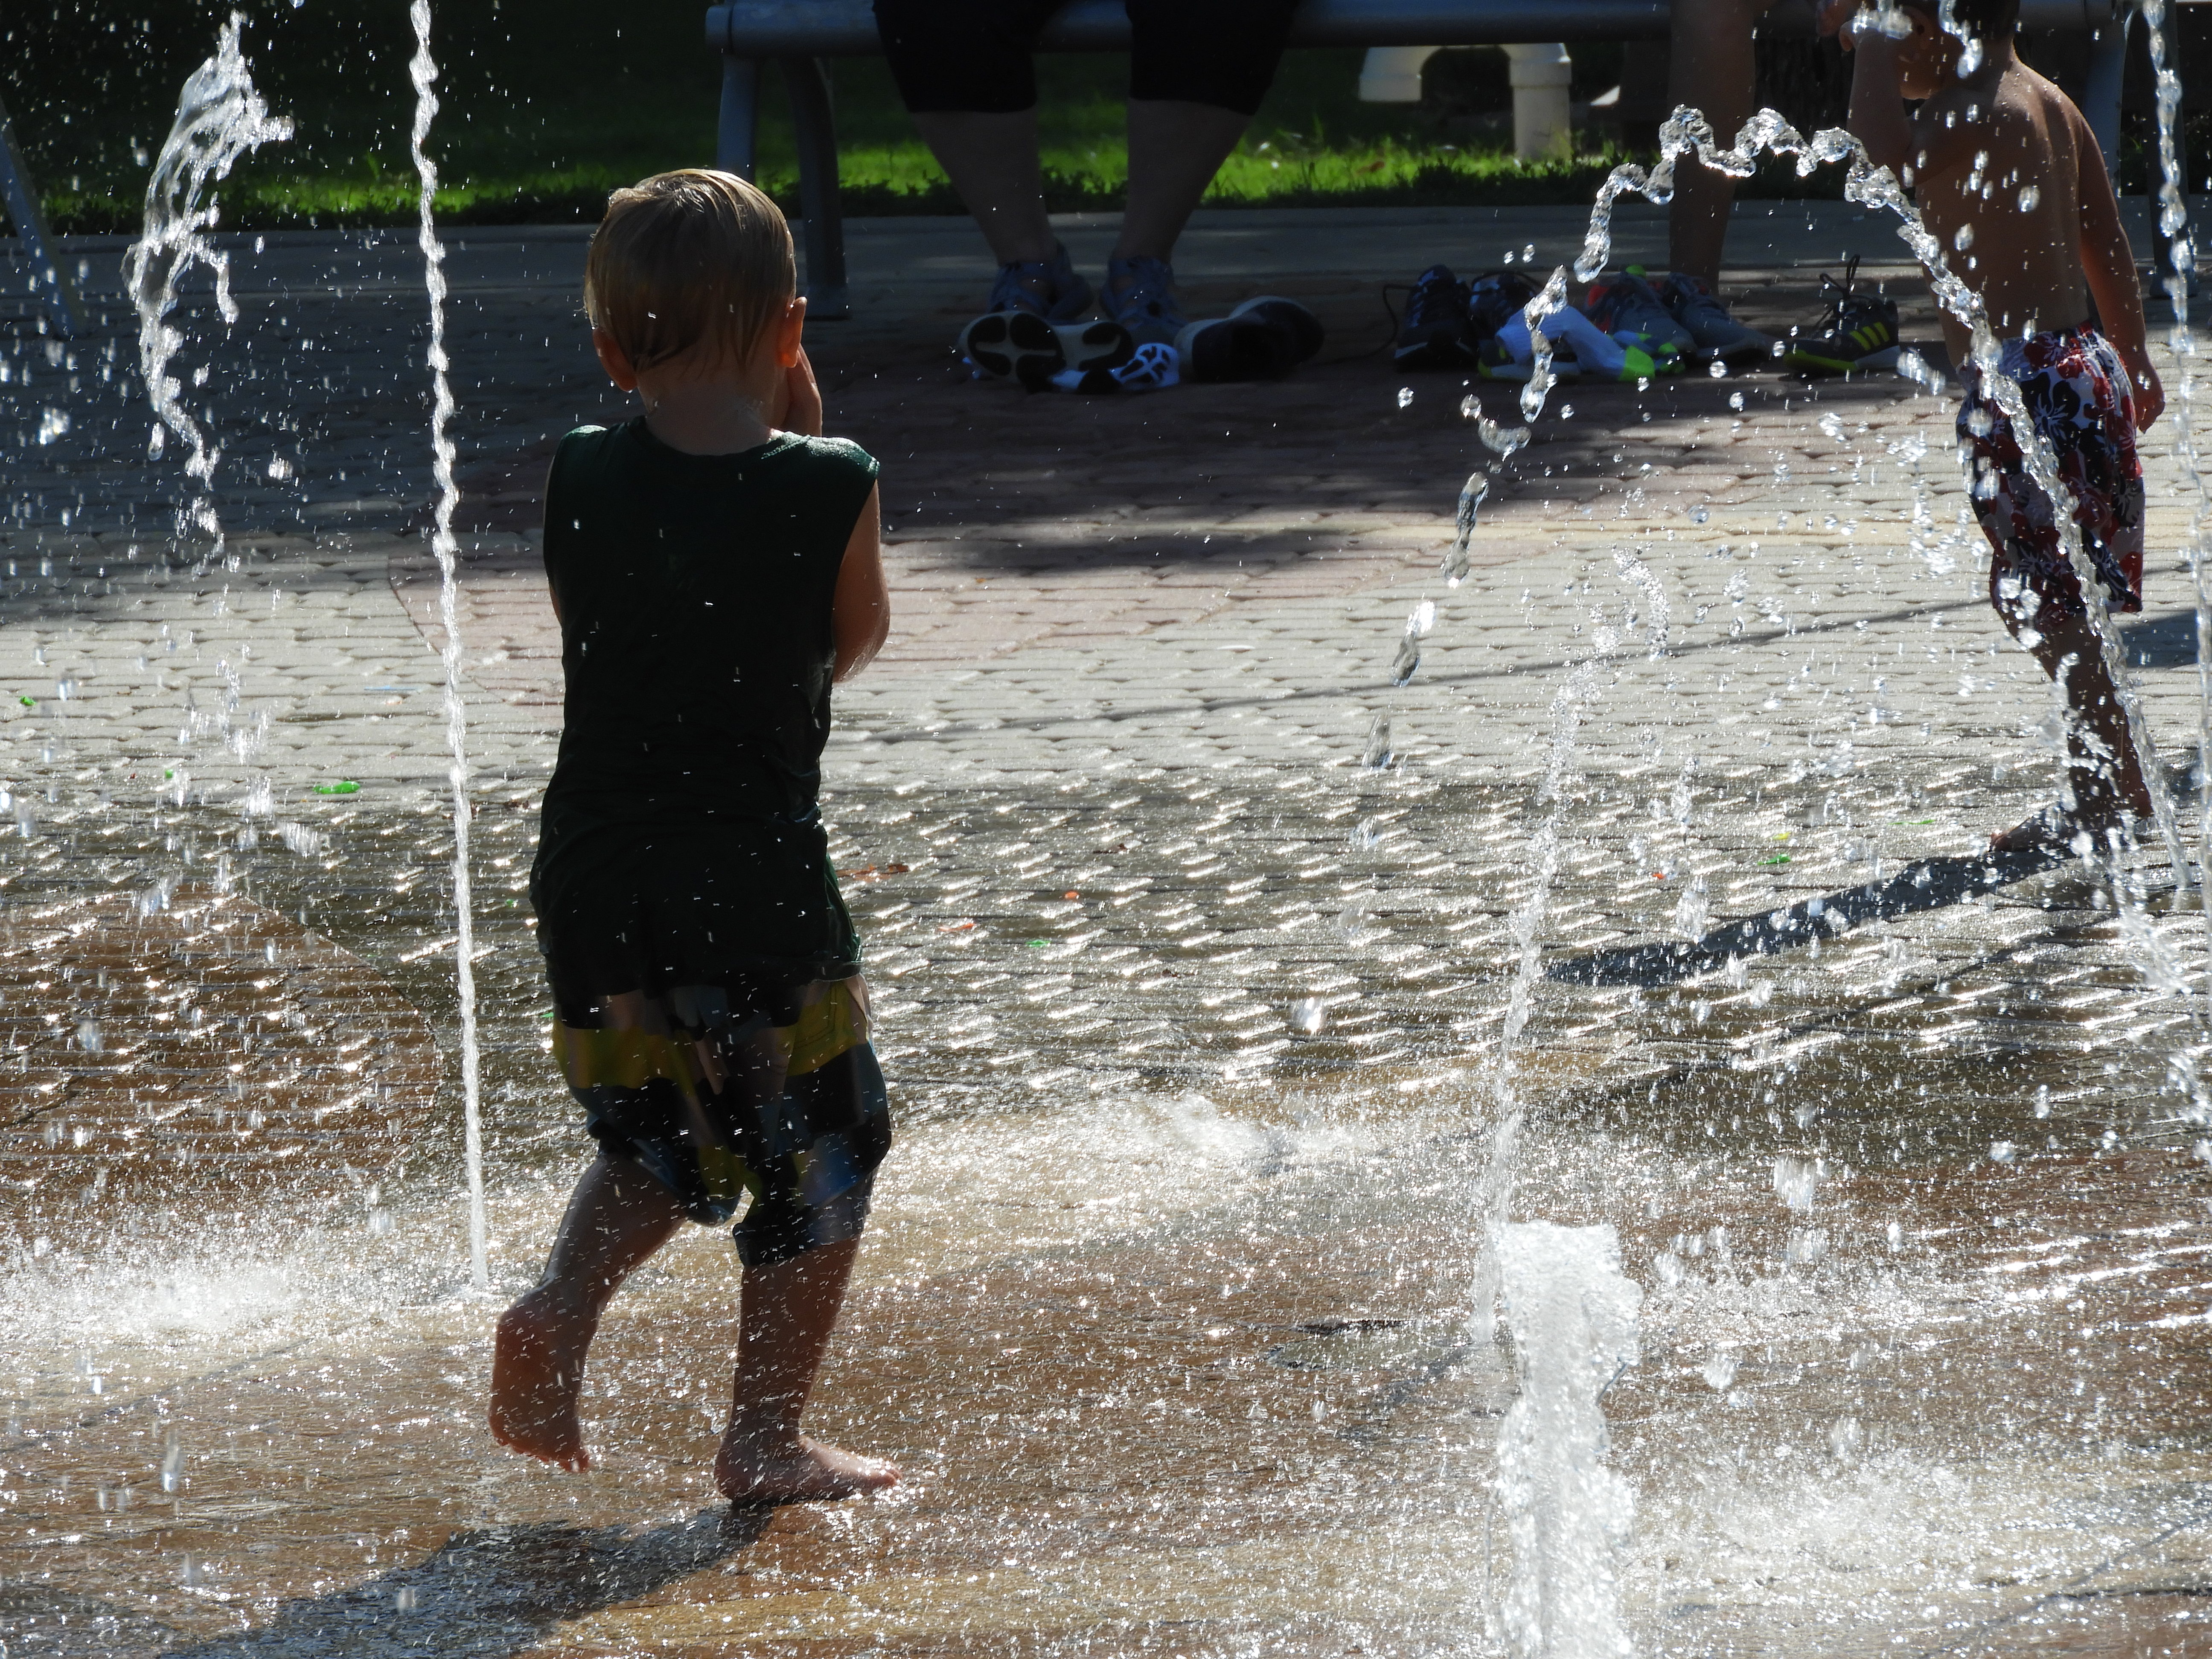 Kids playing in splashing water on a hot summer day in Wichita Kansas